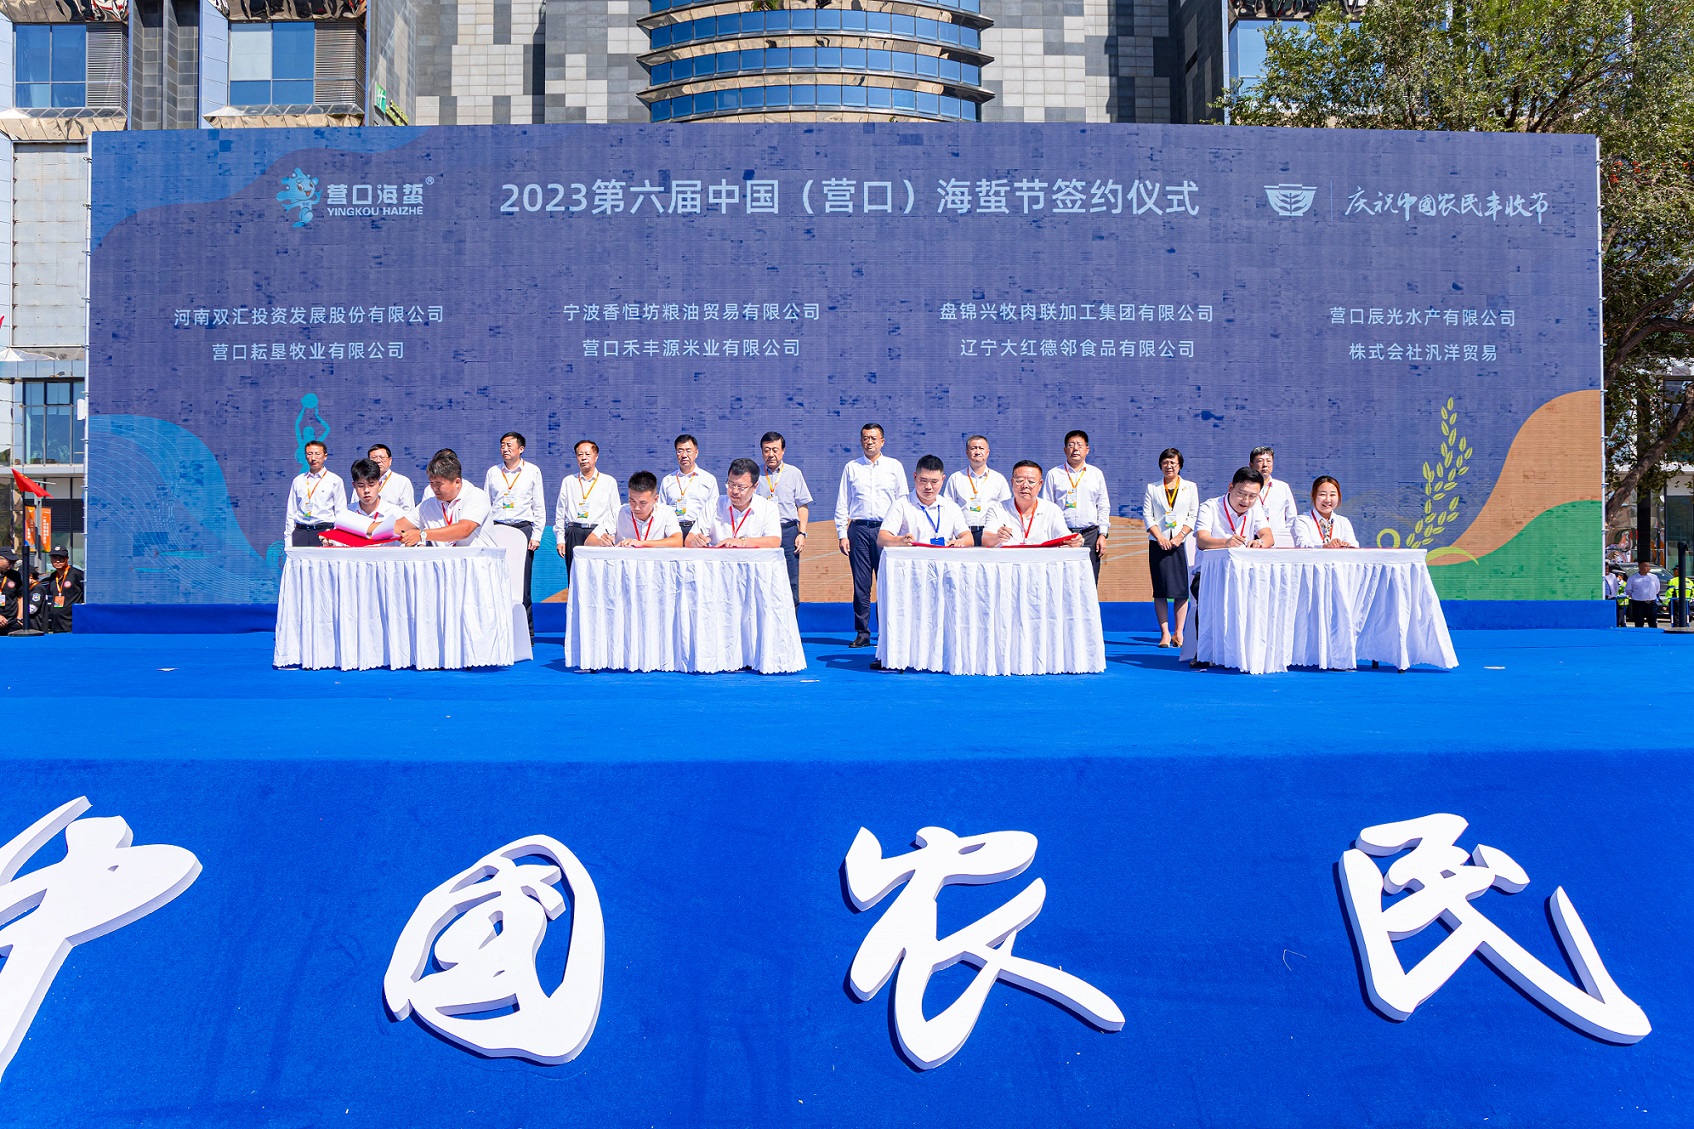 融「展+賽+食+演」於一體 全方位展示海蜇文化  第六屆中國（營口）海蜇節在鮁魚圈舉行